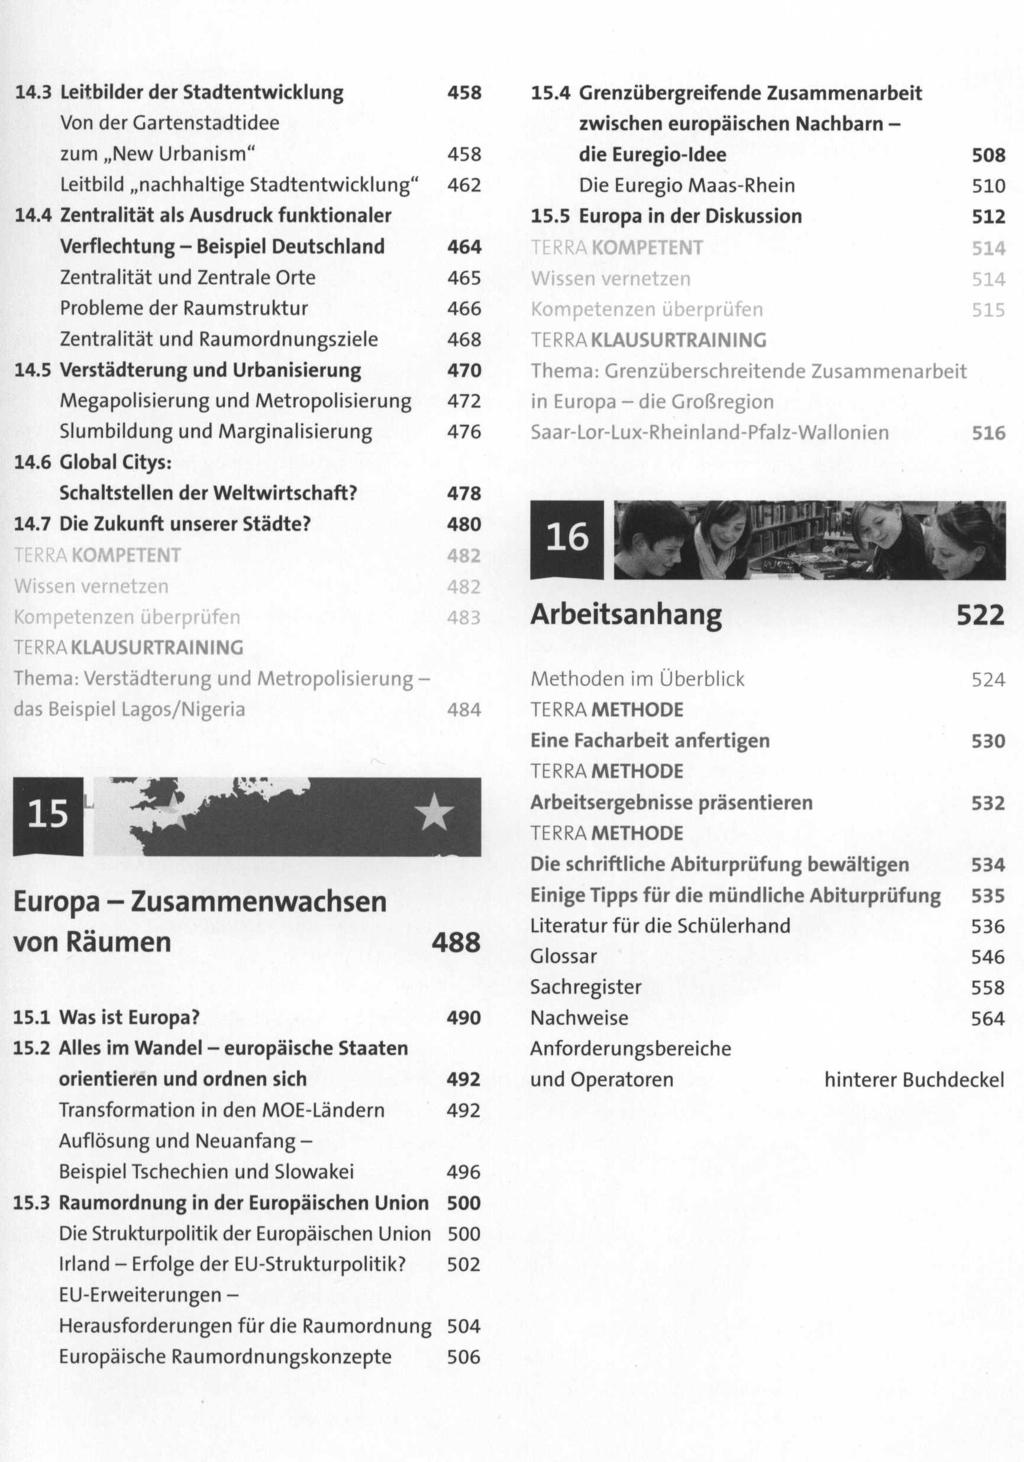 14.3 Leitbilder der Stadtentwicklung 4S8 Von der Gartenstadtidee zum "New Urbanism" 458 Leitbild "nachhaltige 5tadtentwicklung" 462 14.